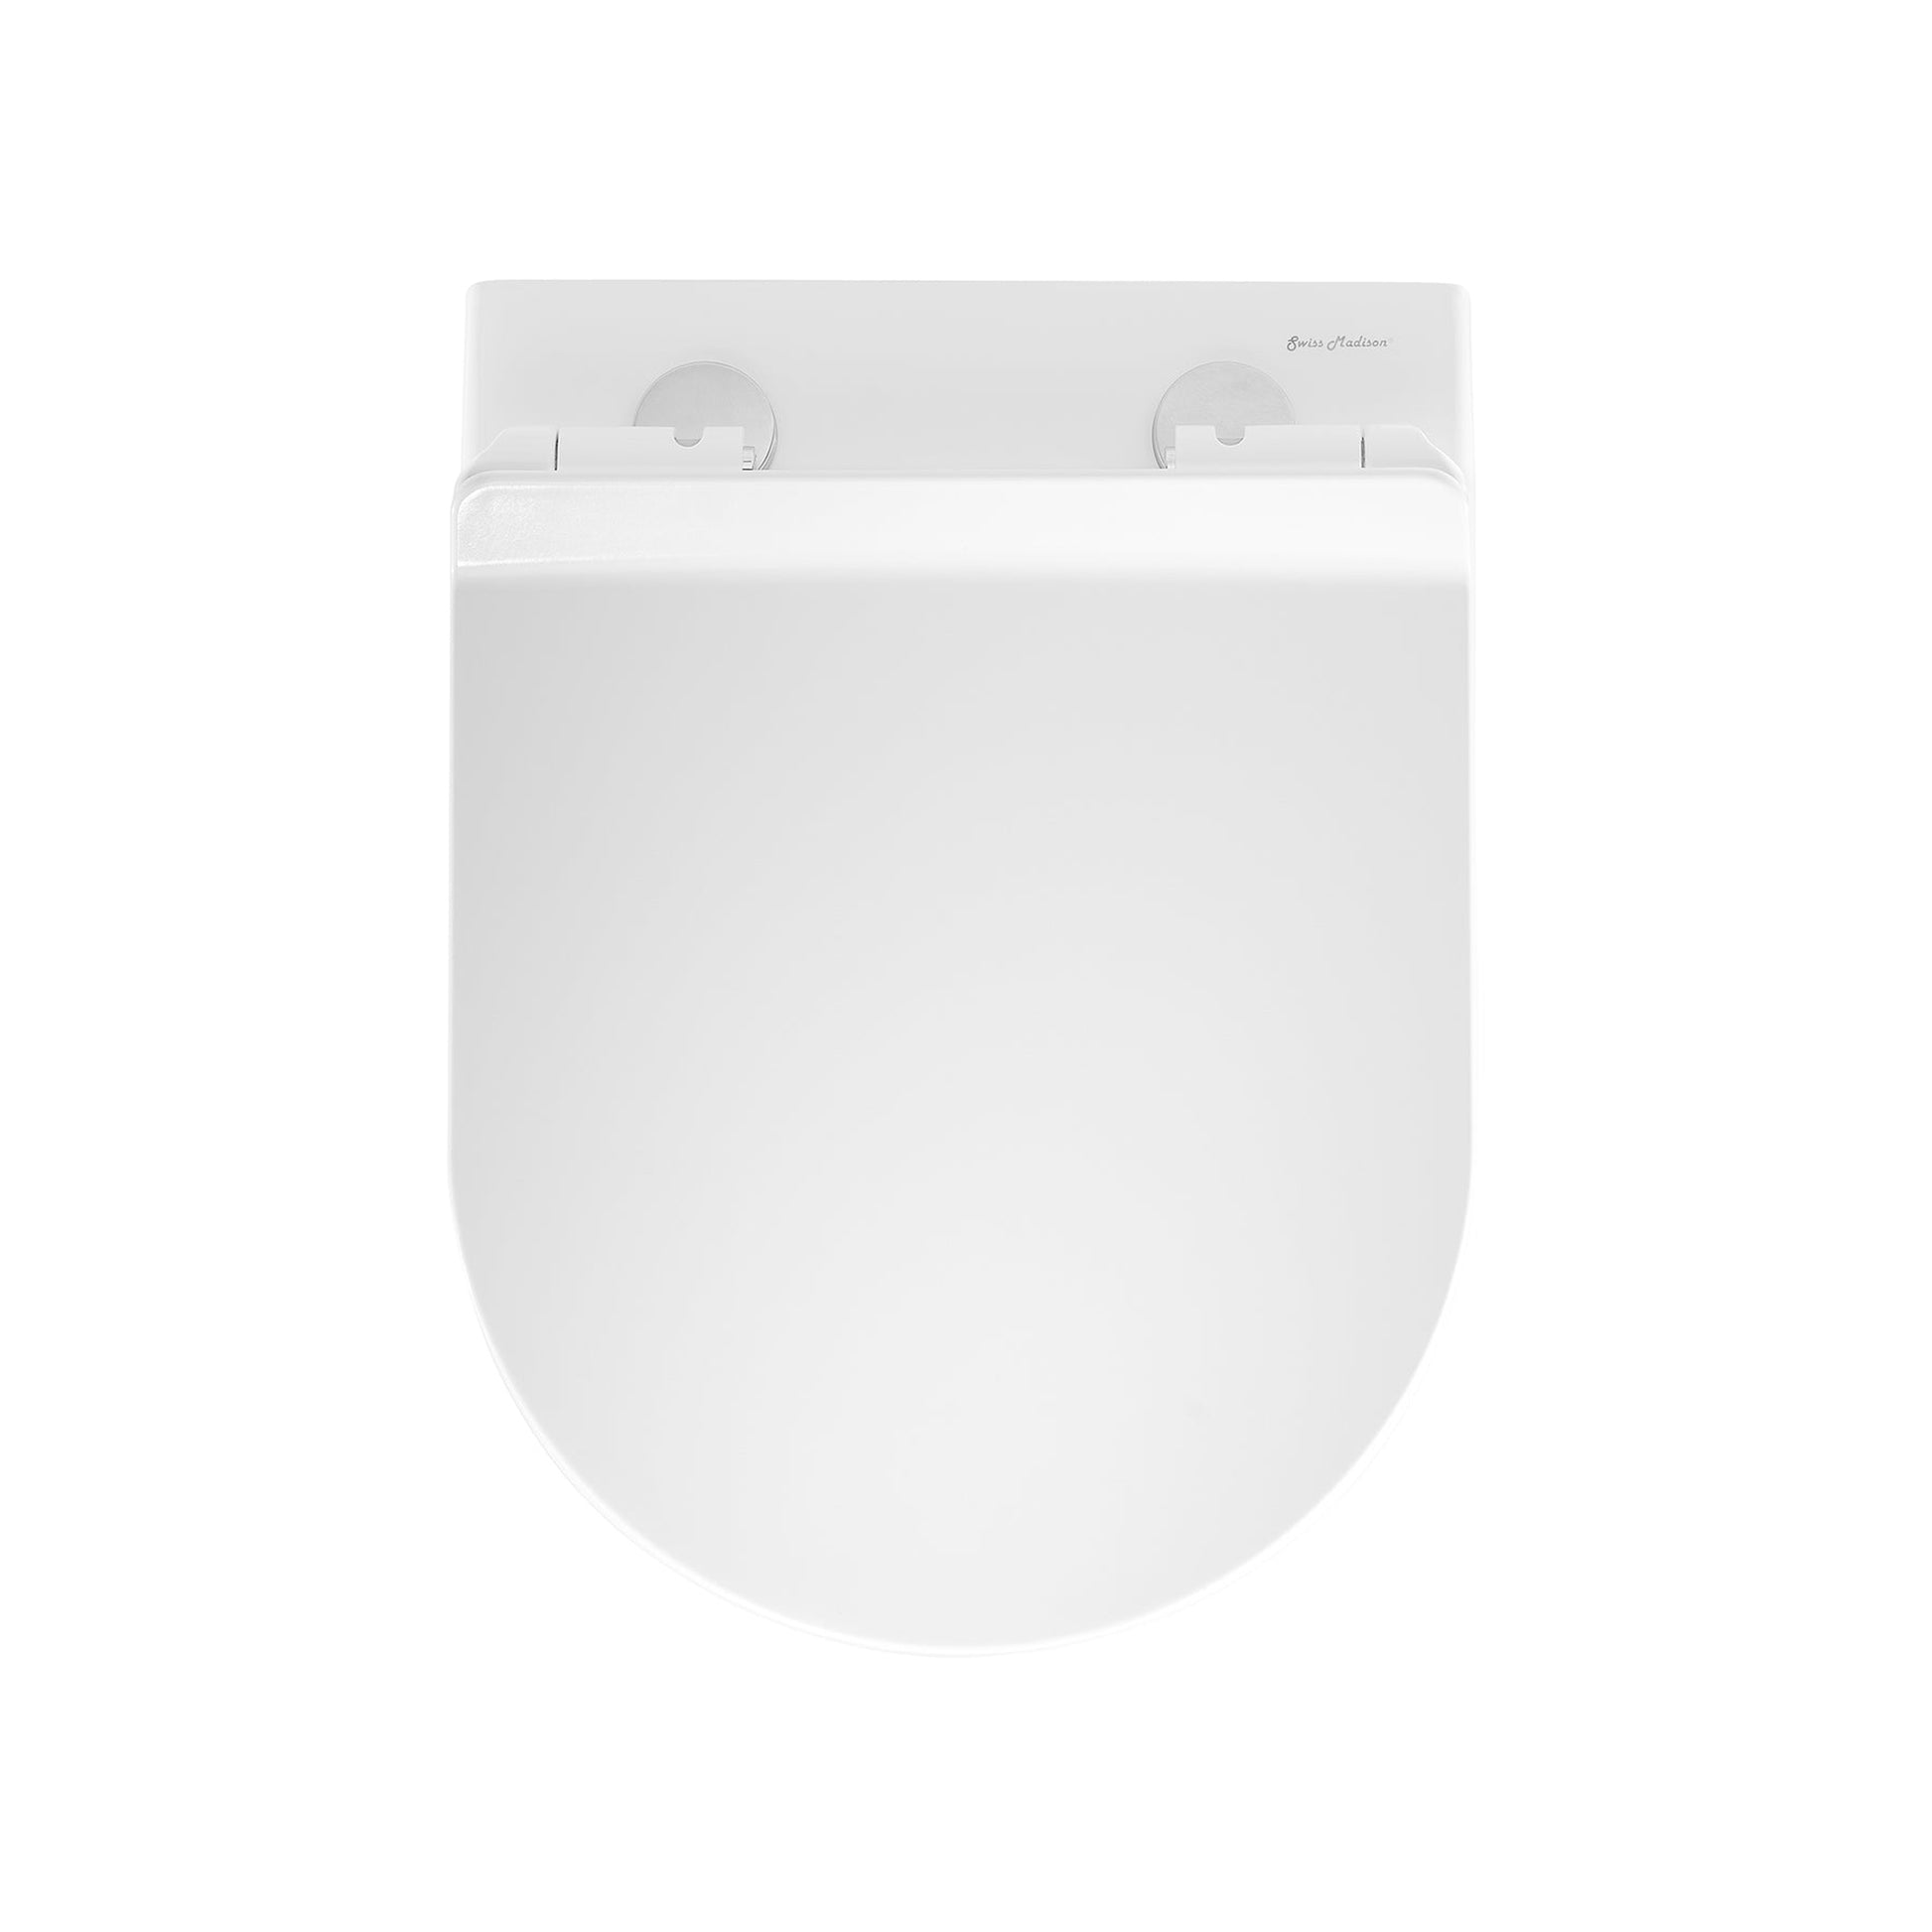 Swiss Madison Monaco 14" x 14" White Round Wall-Hung Toilet Bowl